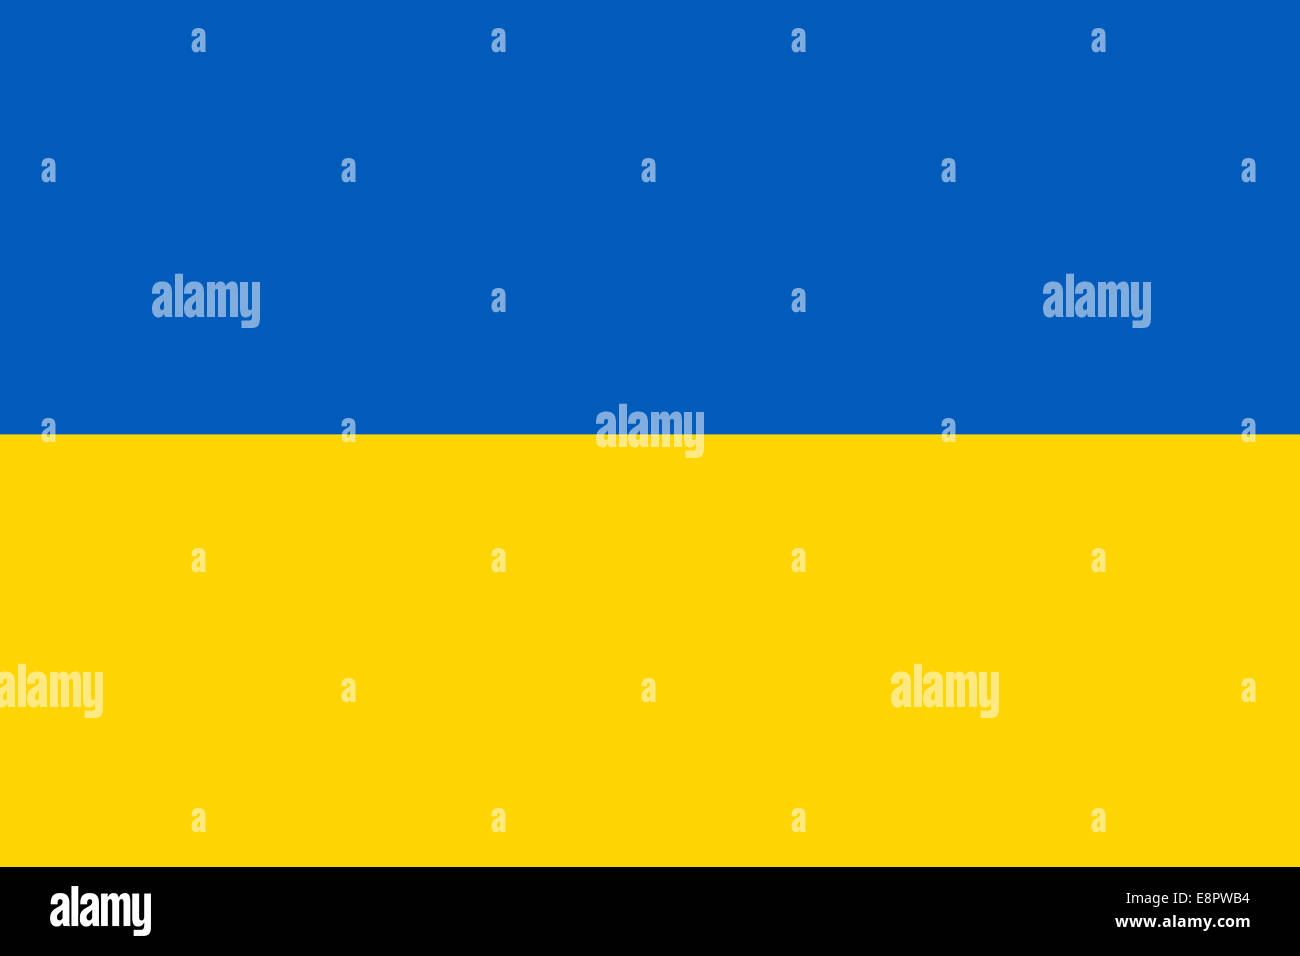 Flagge der Ukraine - Standardverhältnis ukrainische Flagge - True RGB-Farbmodus Stockfoto